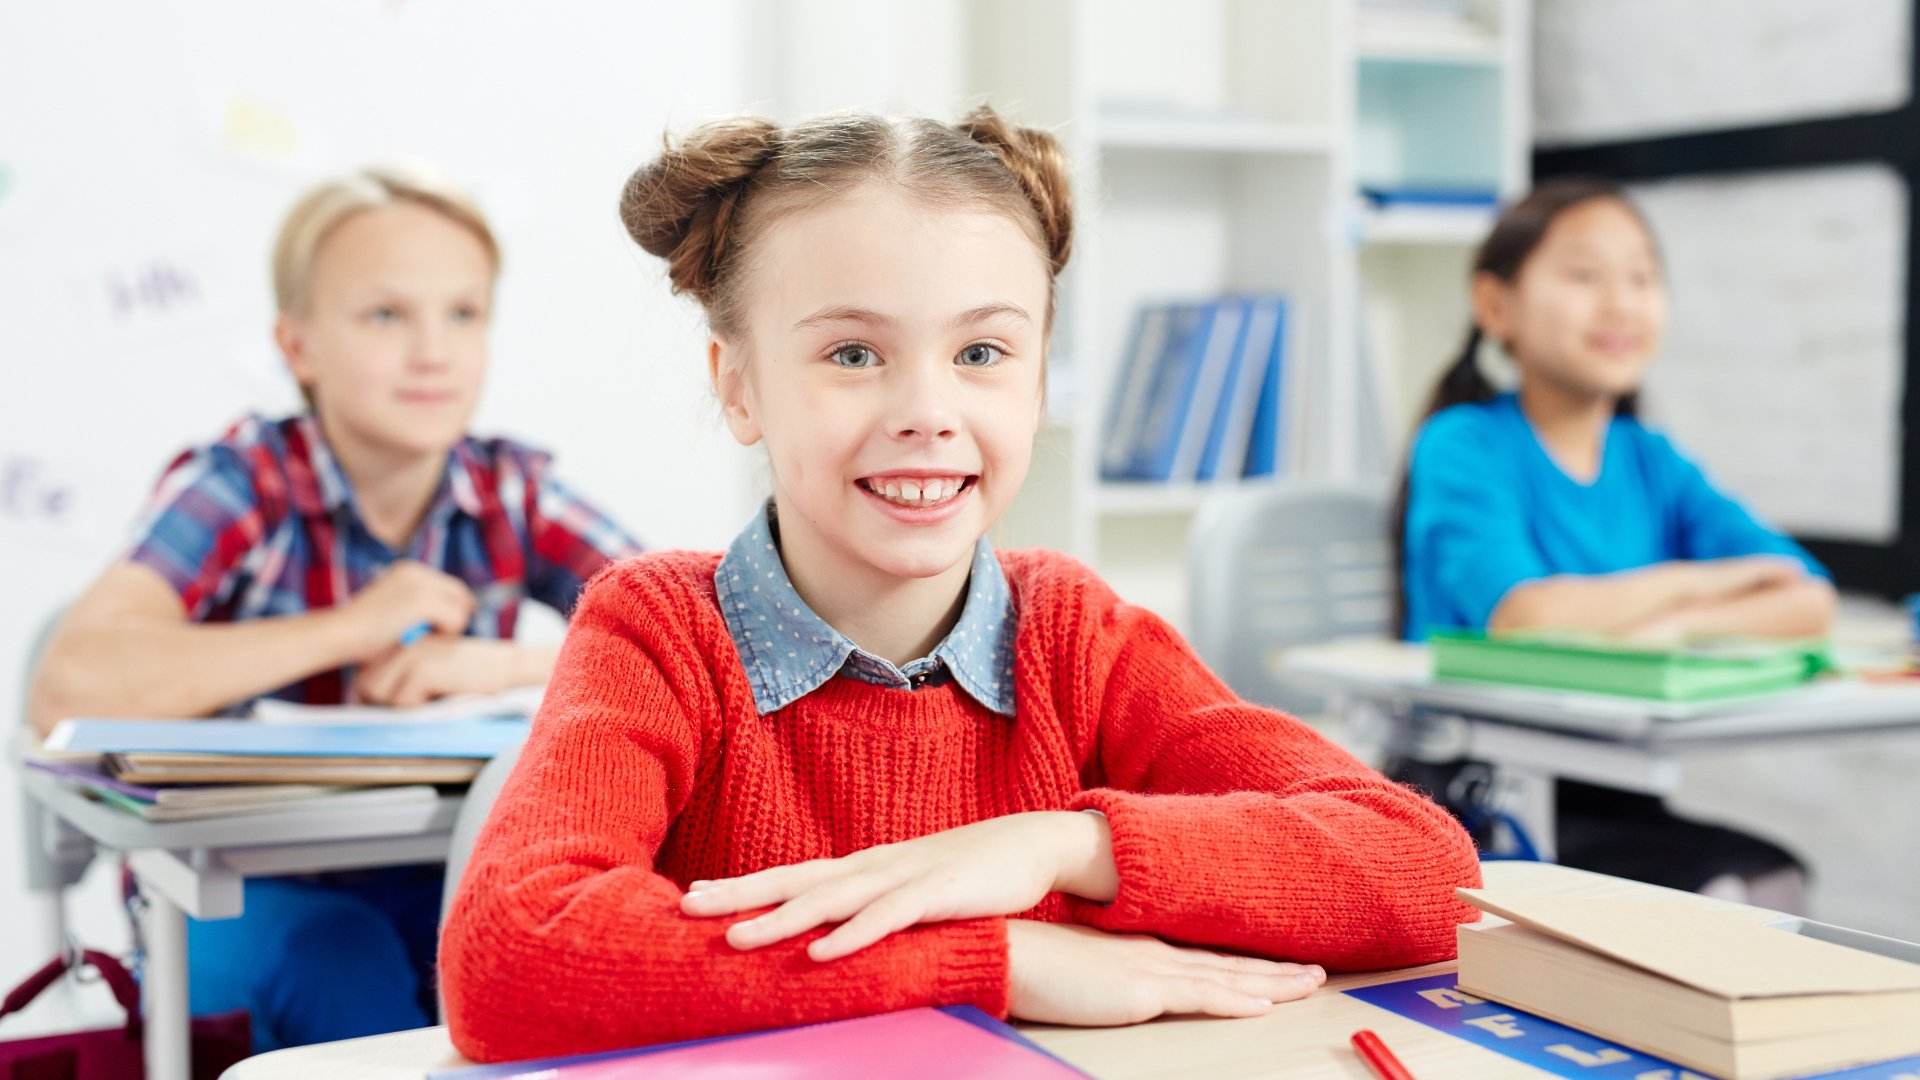 12 frases motivadoras que ayudarán a tu hijo a afrontar el regreso a la escuela